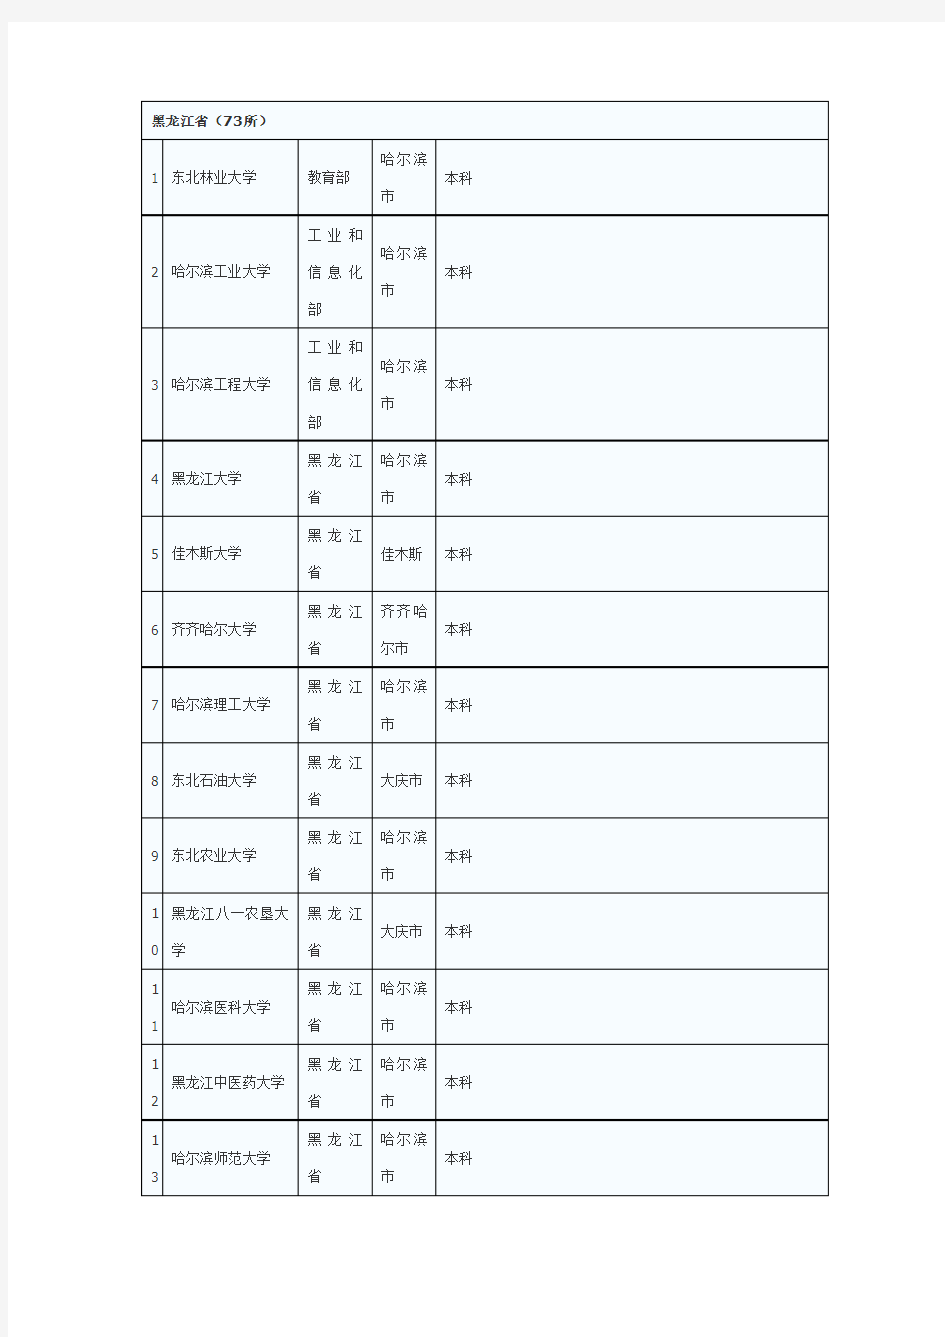 (完整版)全国普通高校名单(黑龙江省)